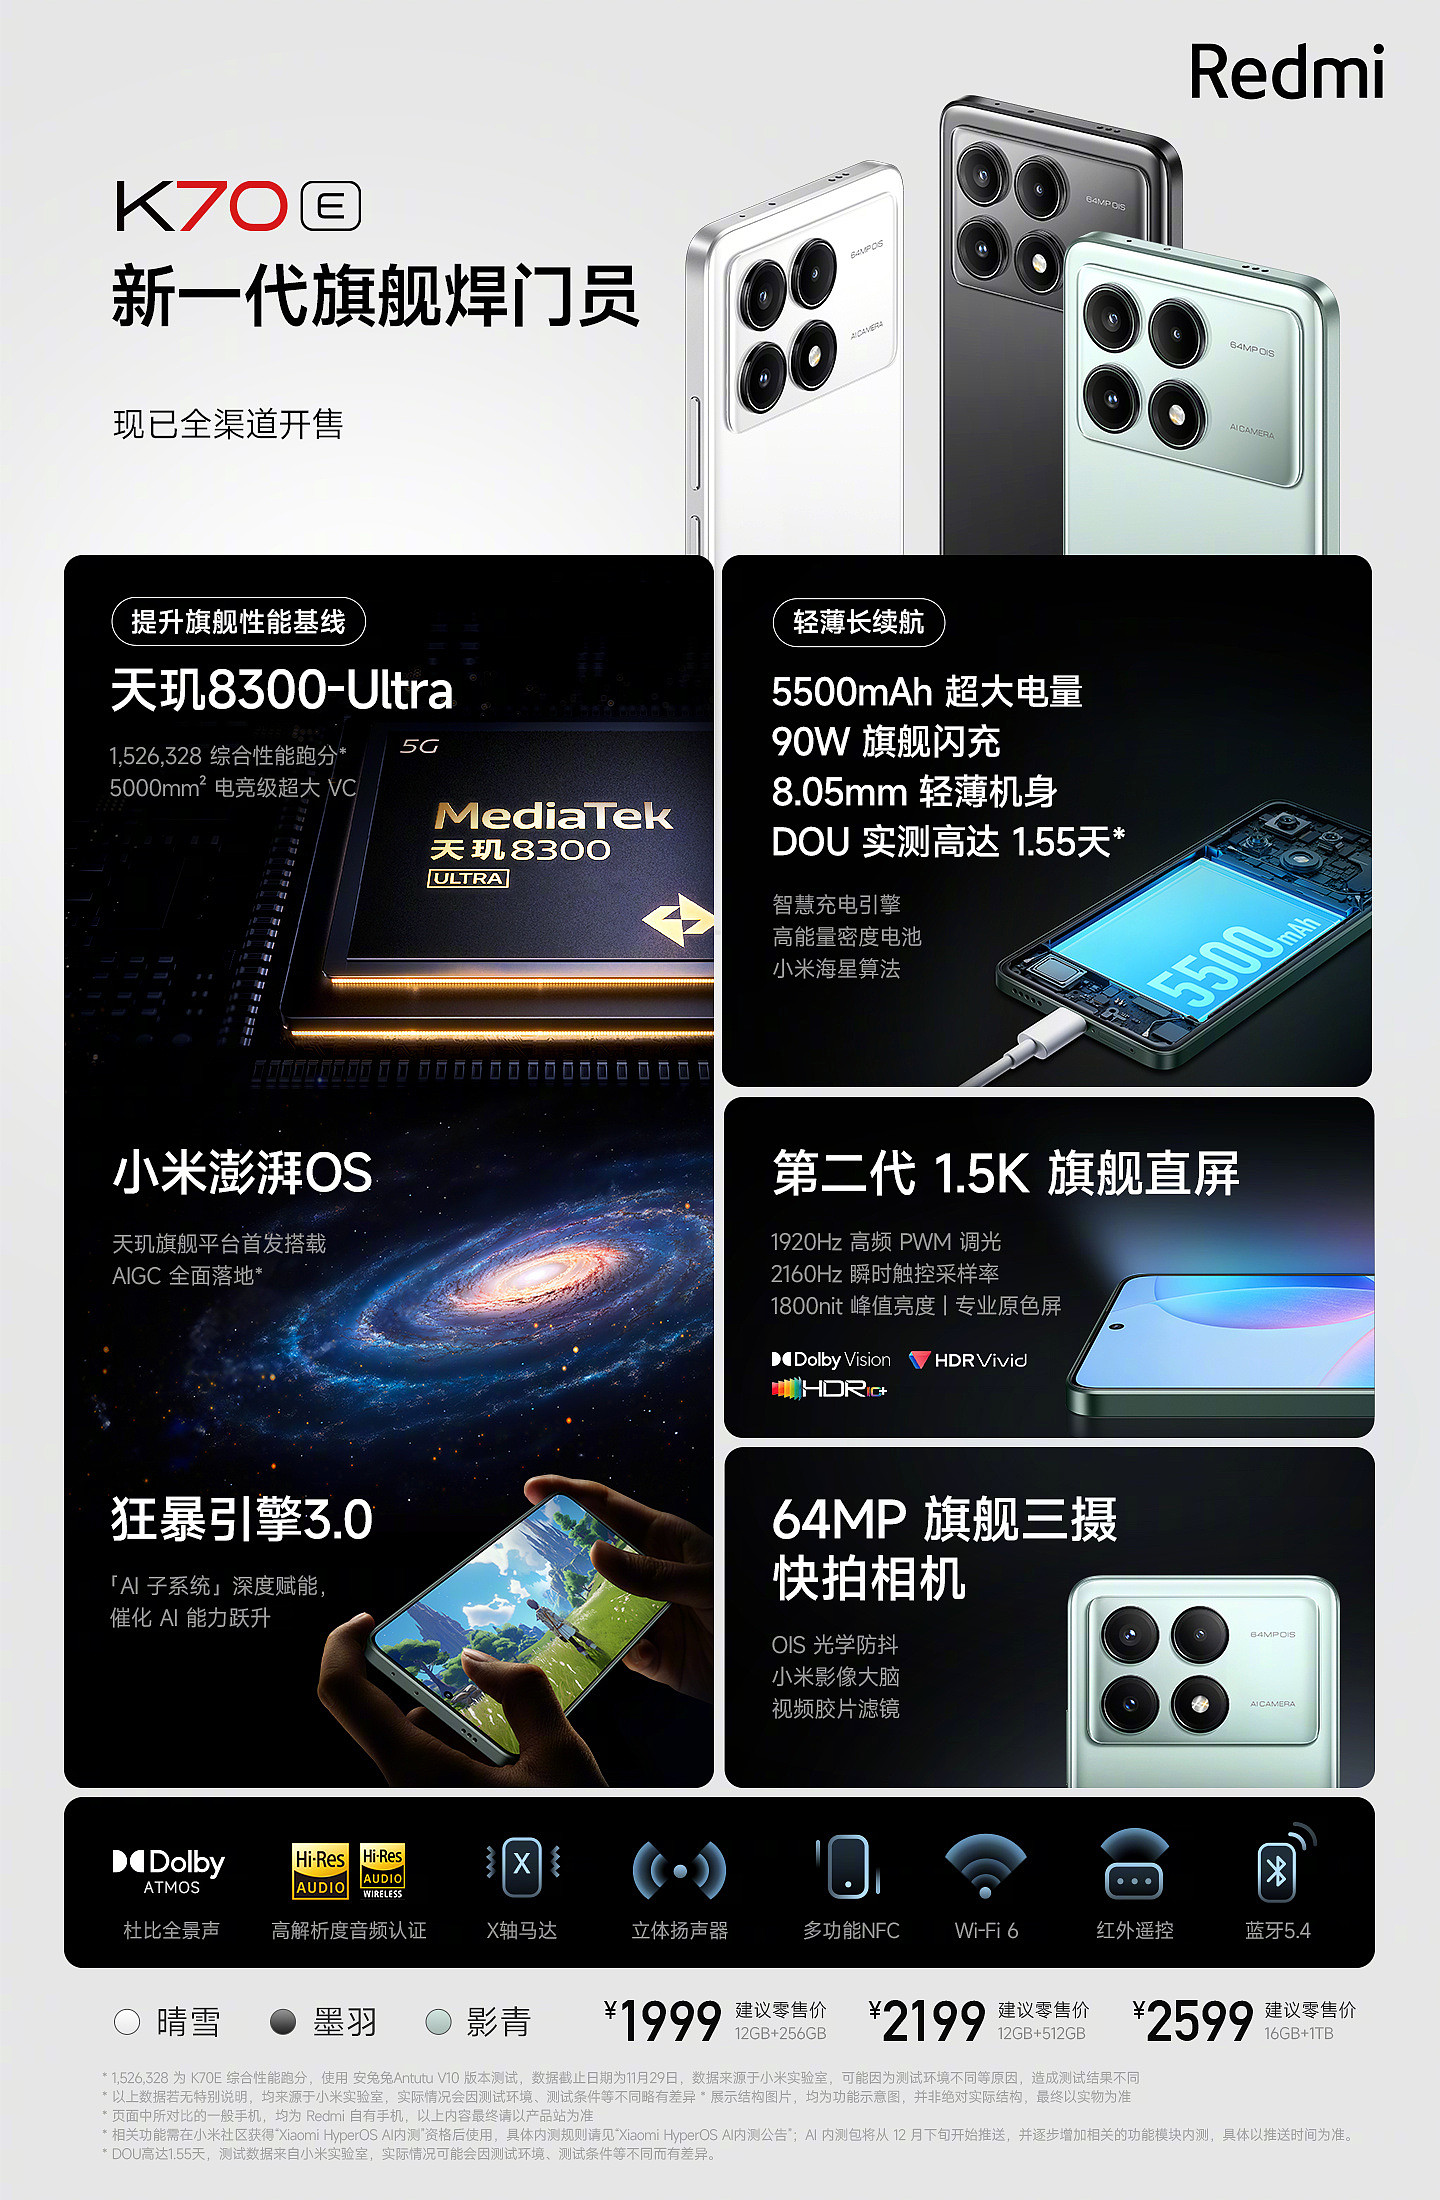 1799 元起，小米 Redmi K70E 手机限时优惠 200 元：天玑 8300-Ultra 处理器 / 5500mAh 电池 - 6